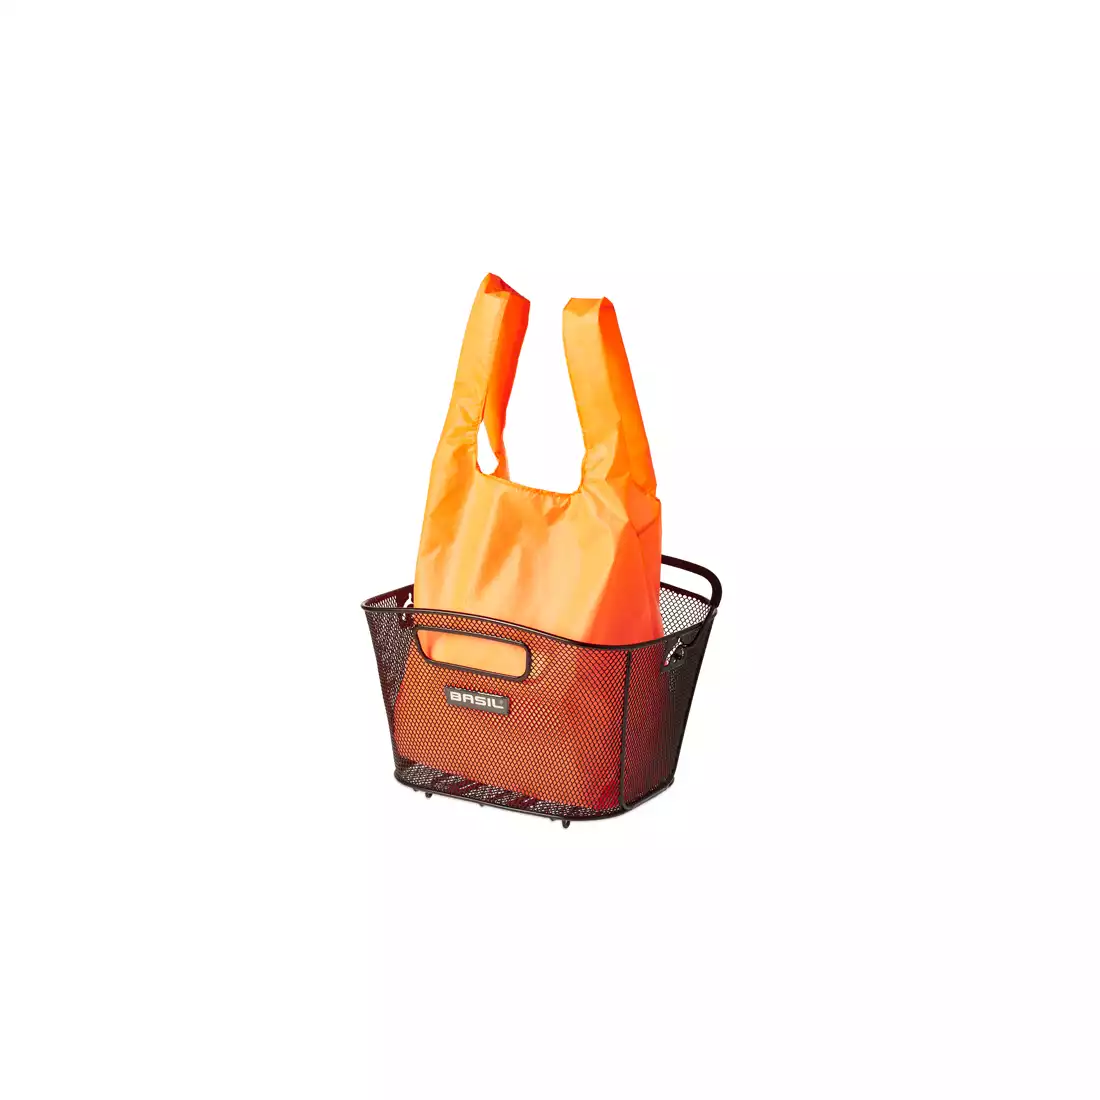 Siatka na zakupy BASIL KEEP SHOPPER pomarańczowa neon BAS-50453